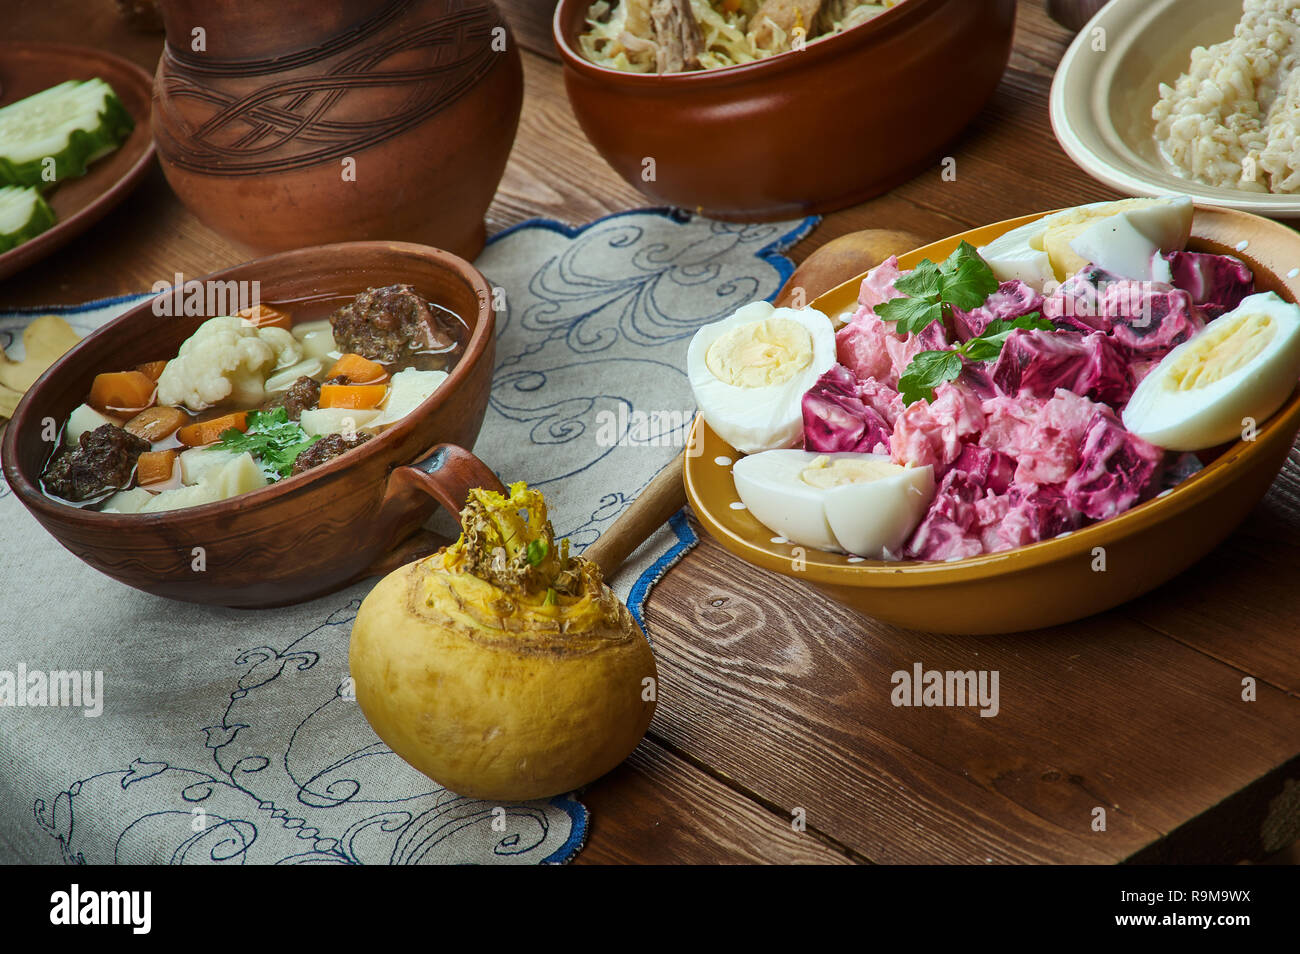 Estnische Küche, Traditionelle verschiedene Gerichte, Ansicht von oben  Stockfotografie - Alamy